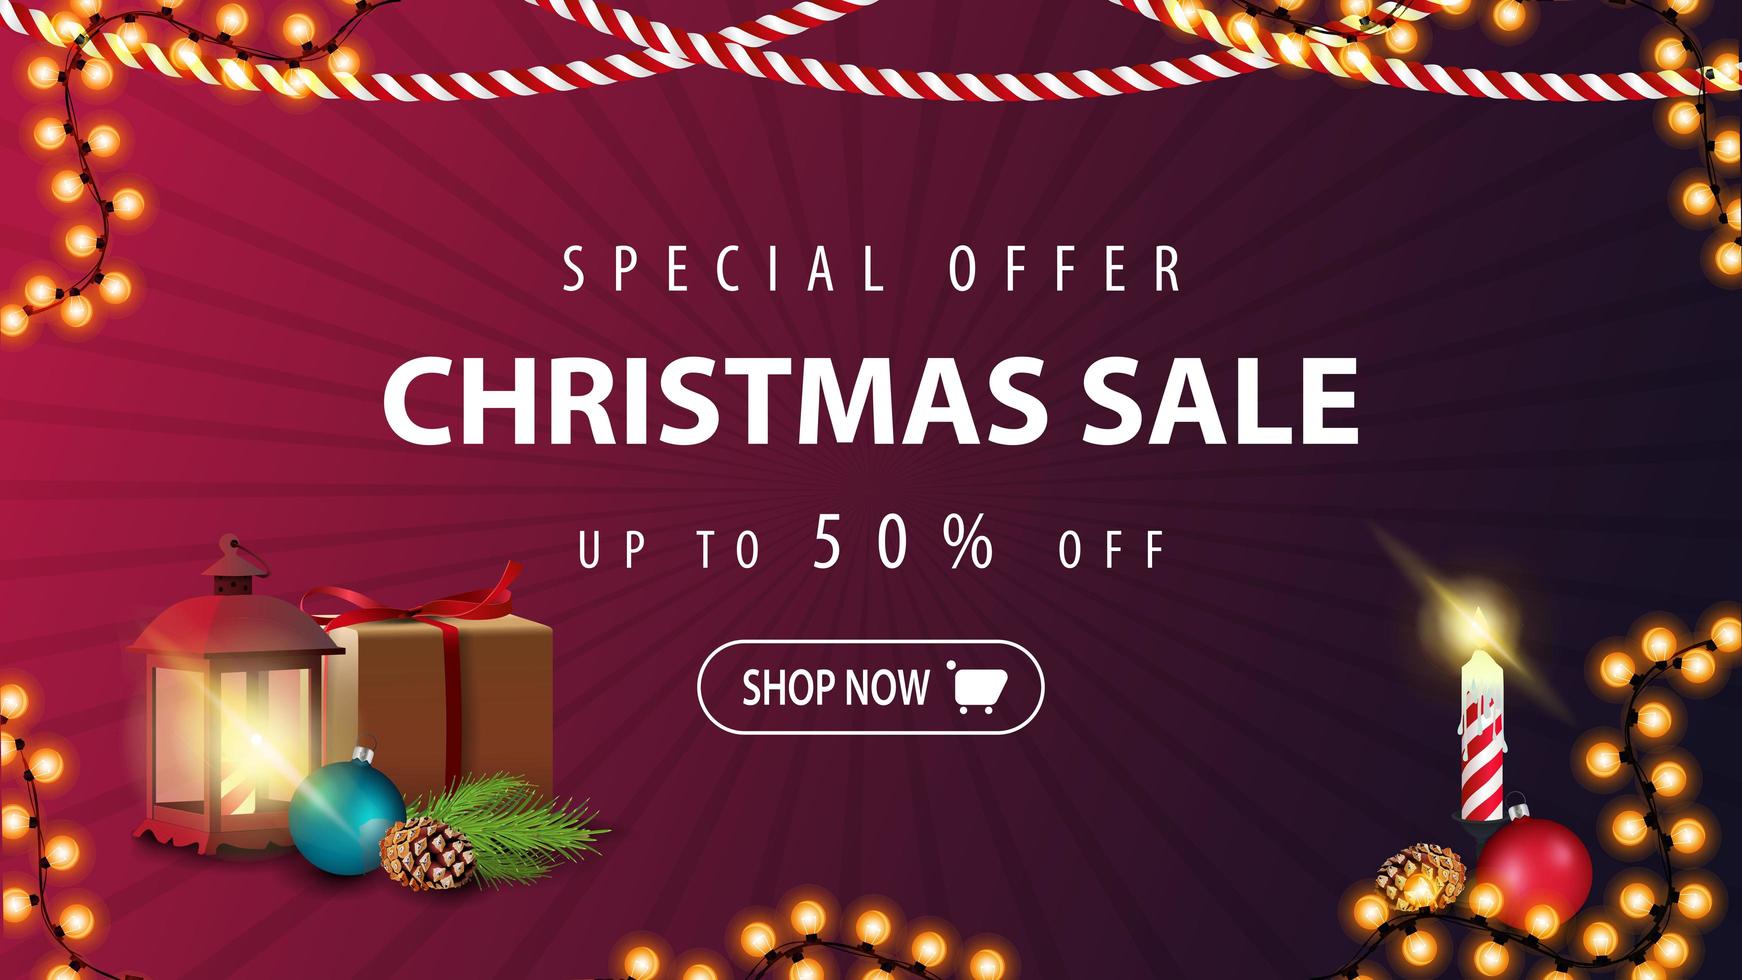 speciale aanbieding, kerstuitverkoop, tot 50 korting, moderne paarse kortingsbanner in minimalistische stijl vector